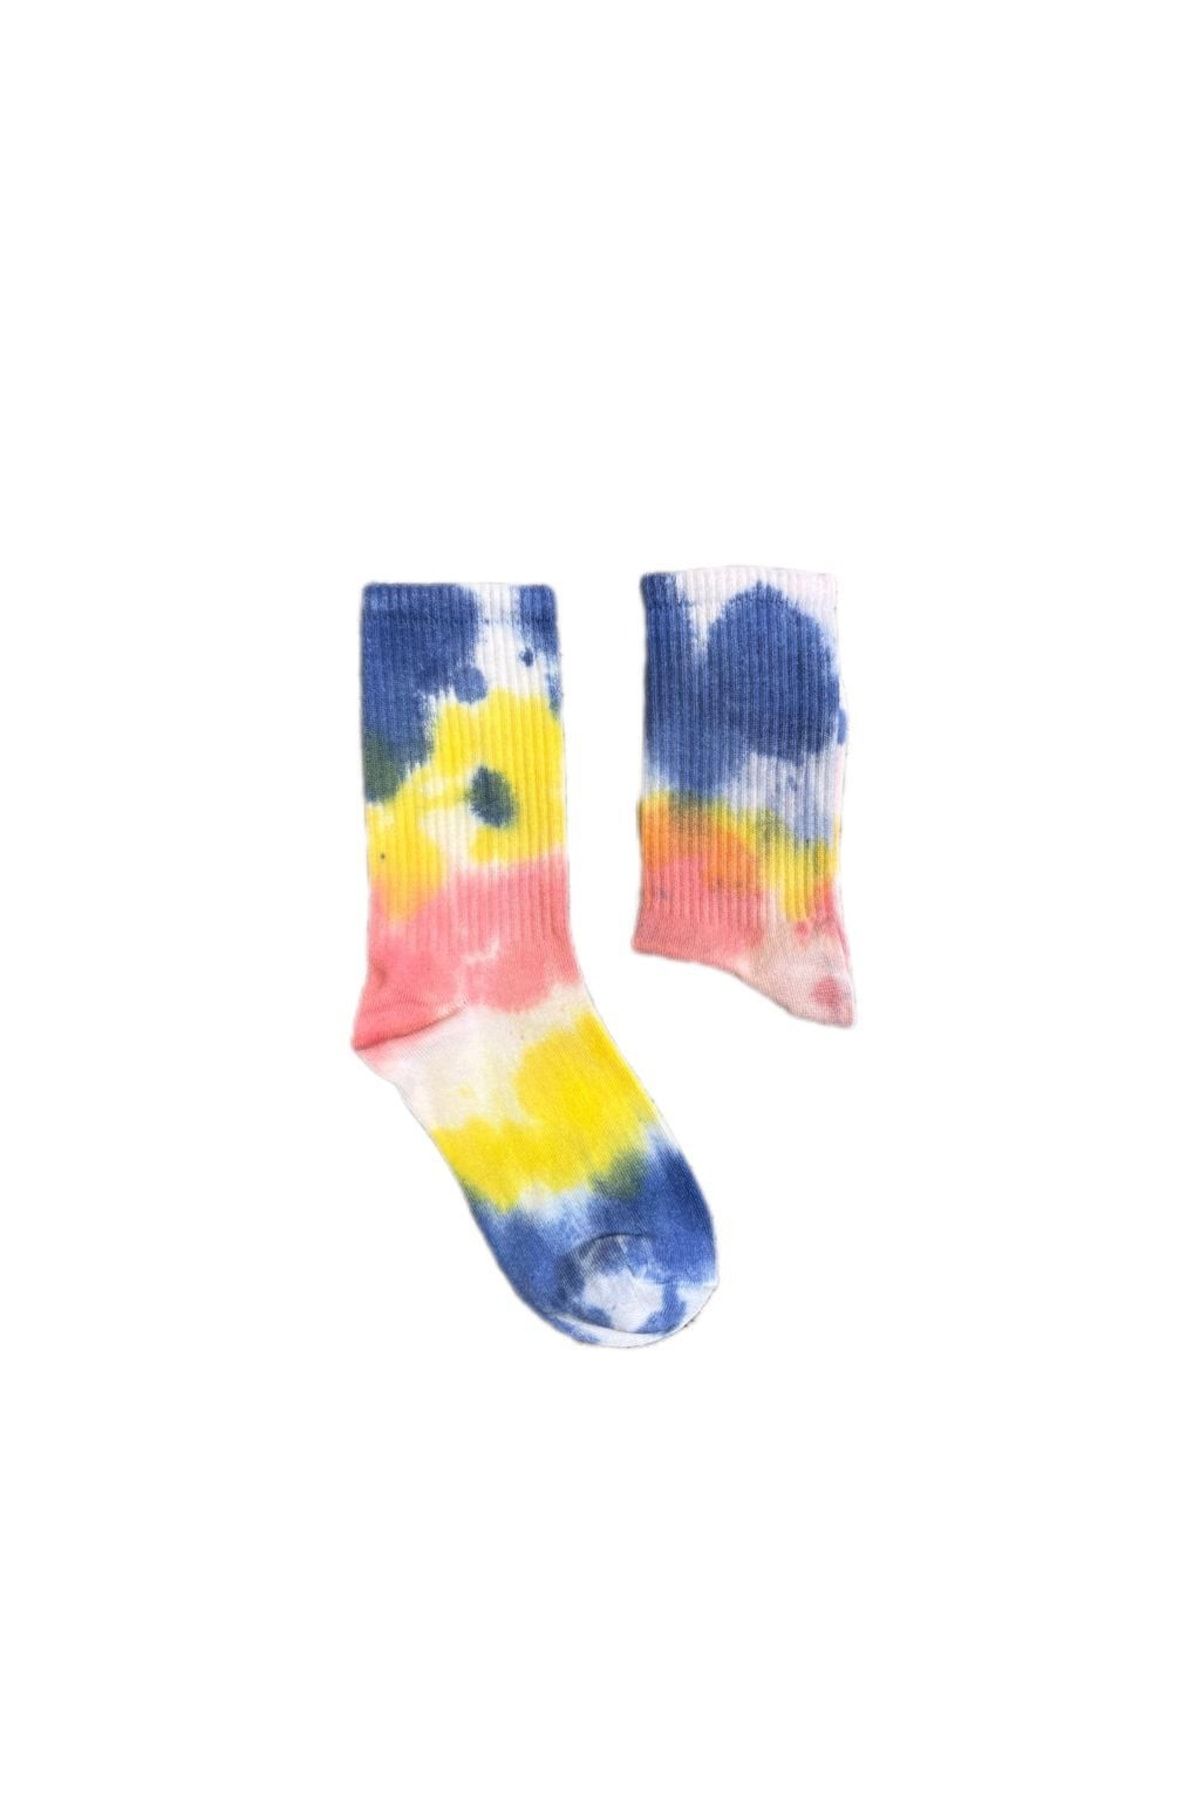 Kuzgunshop Batik (beyaz-sarı-mavi-pembe) Unisex Çorap